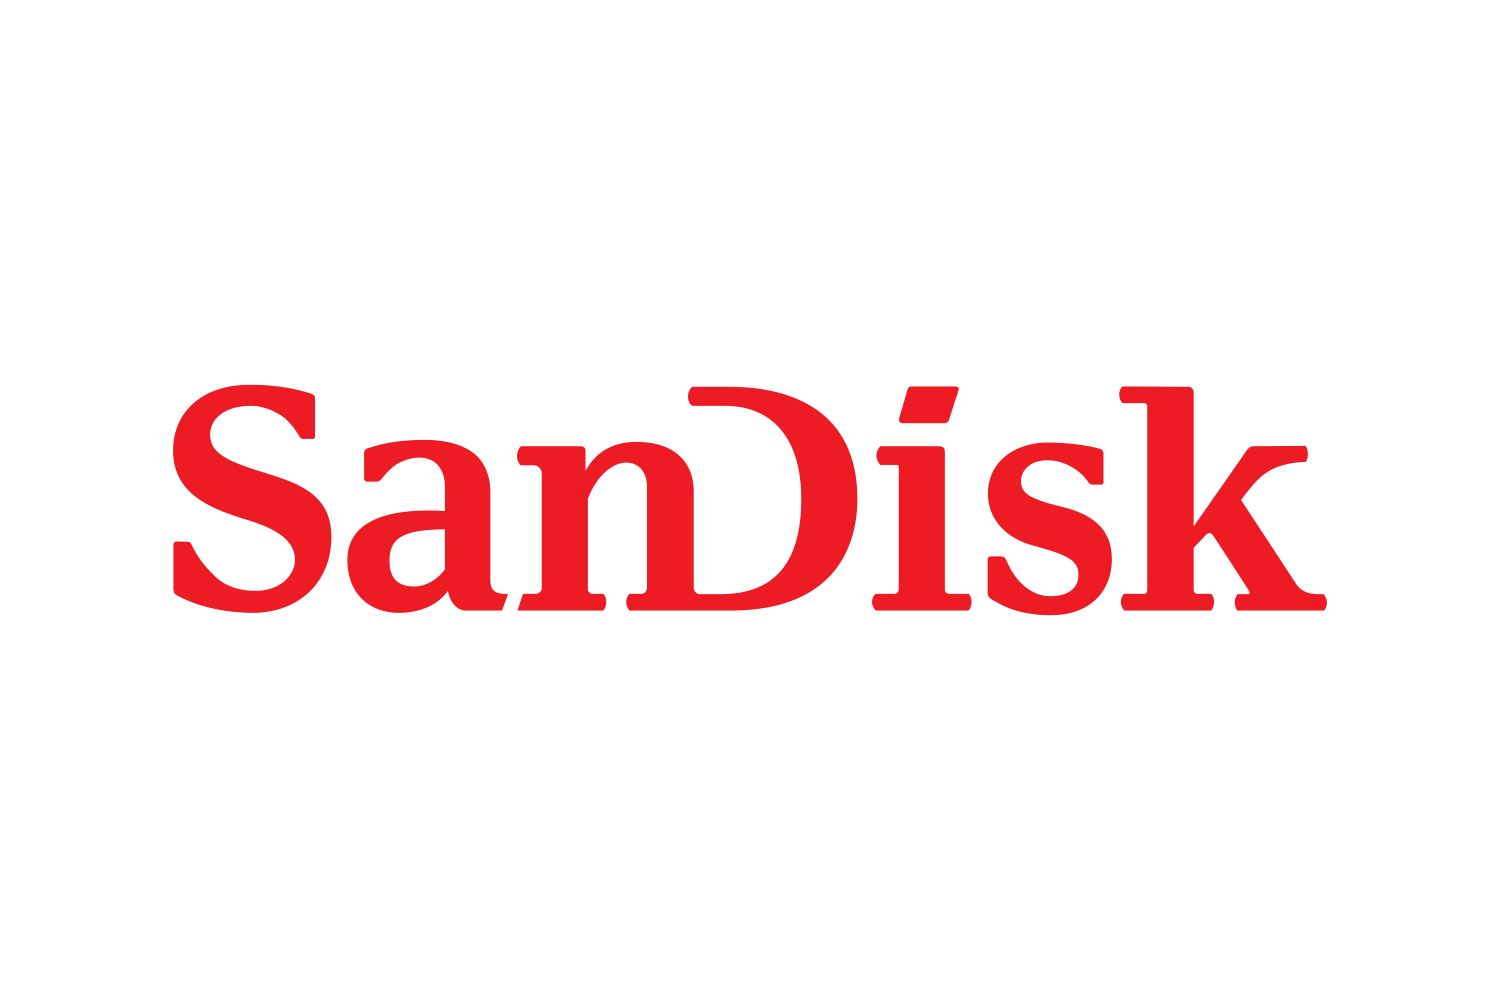 SANDISK SanDisk.png